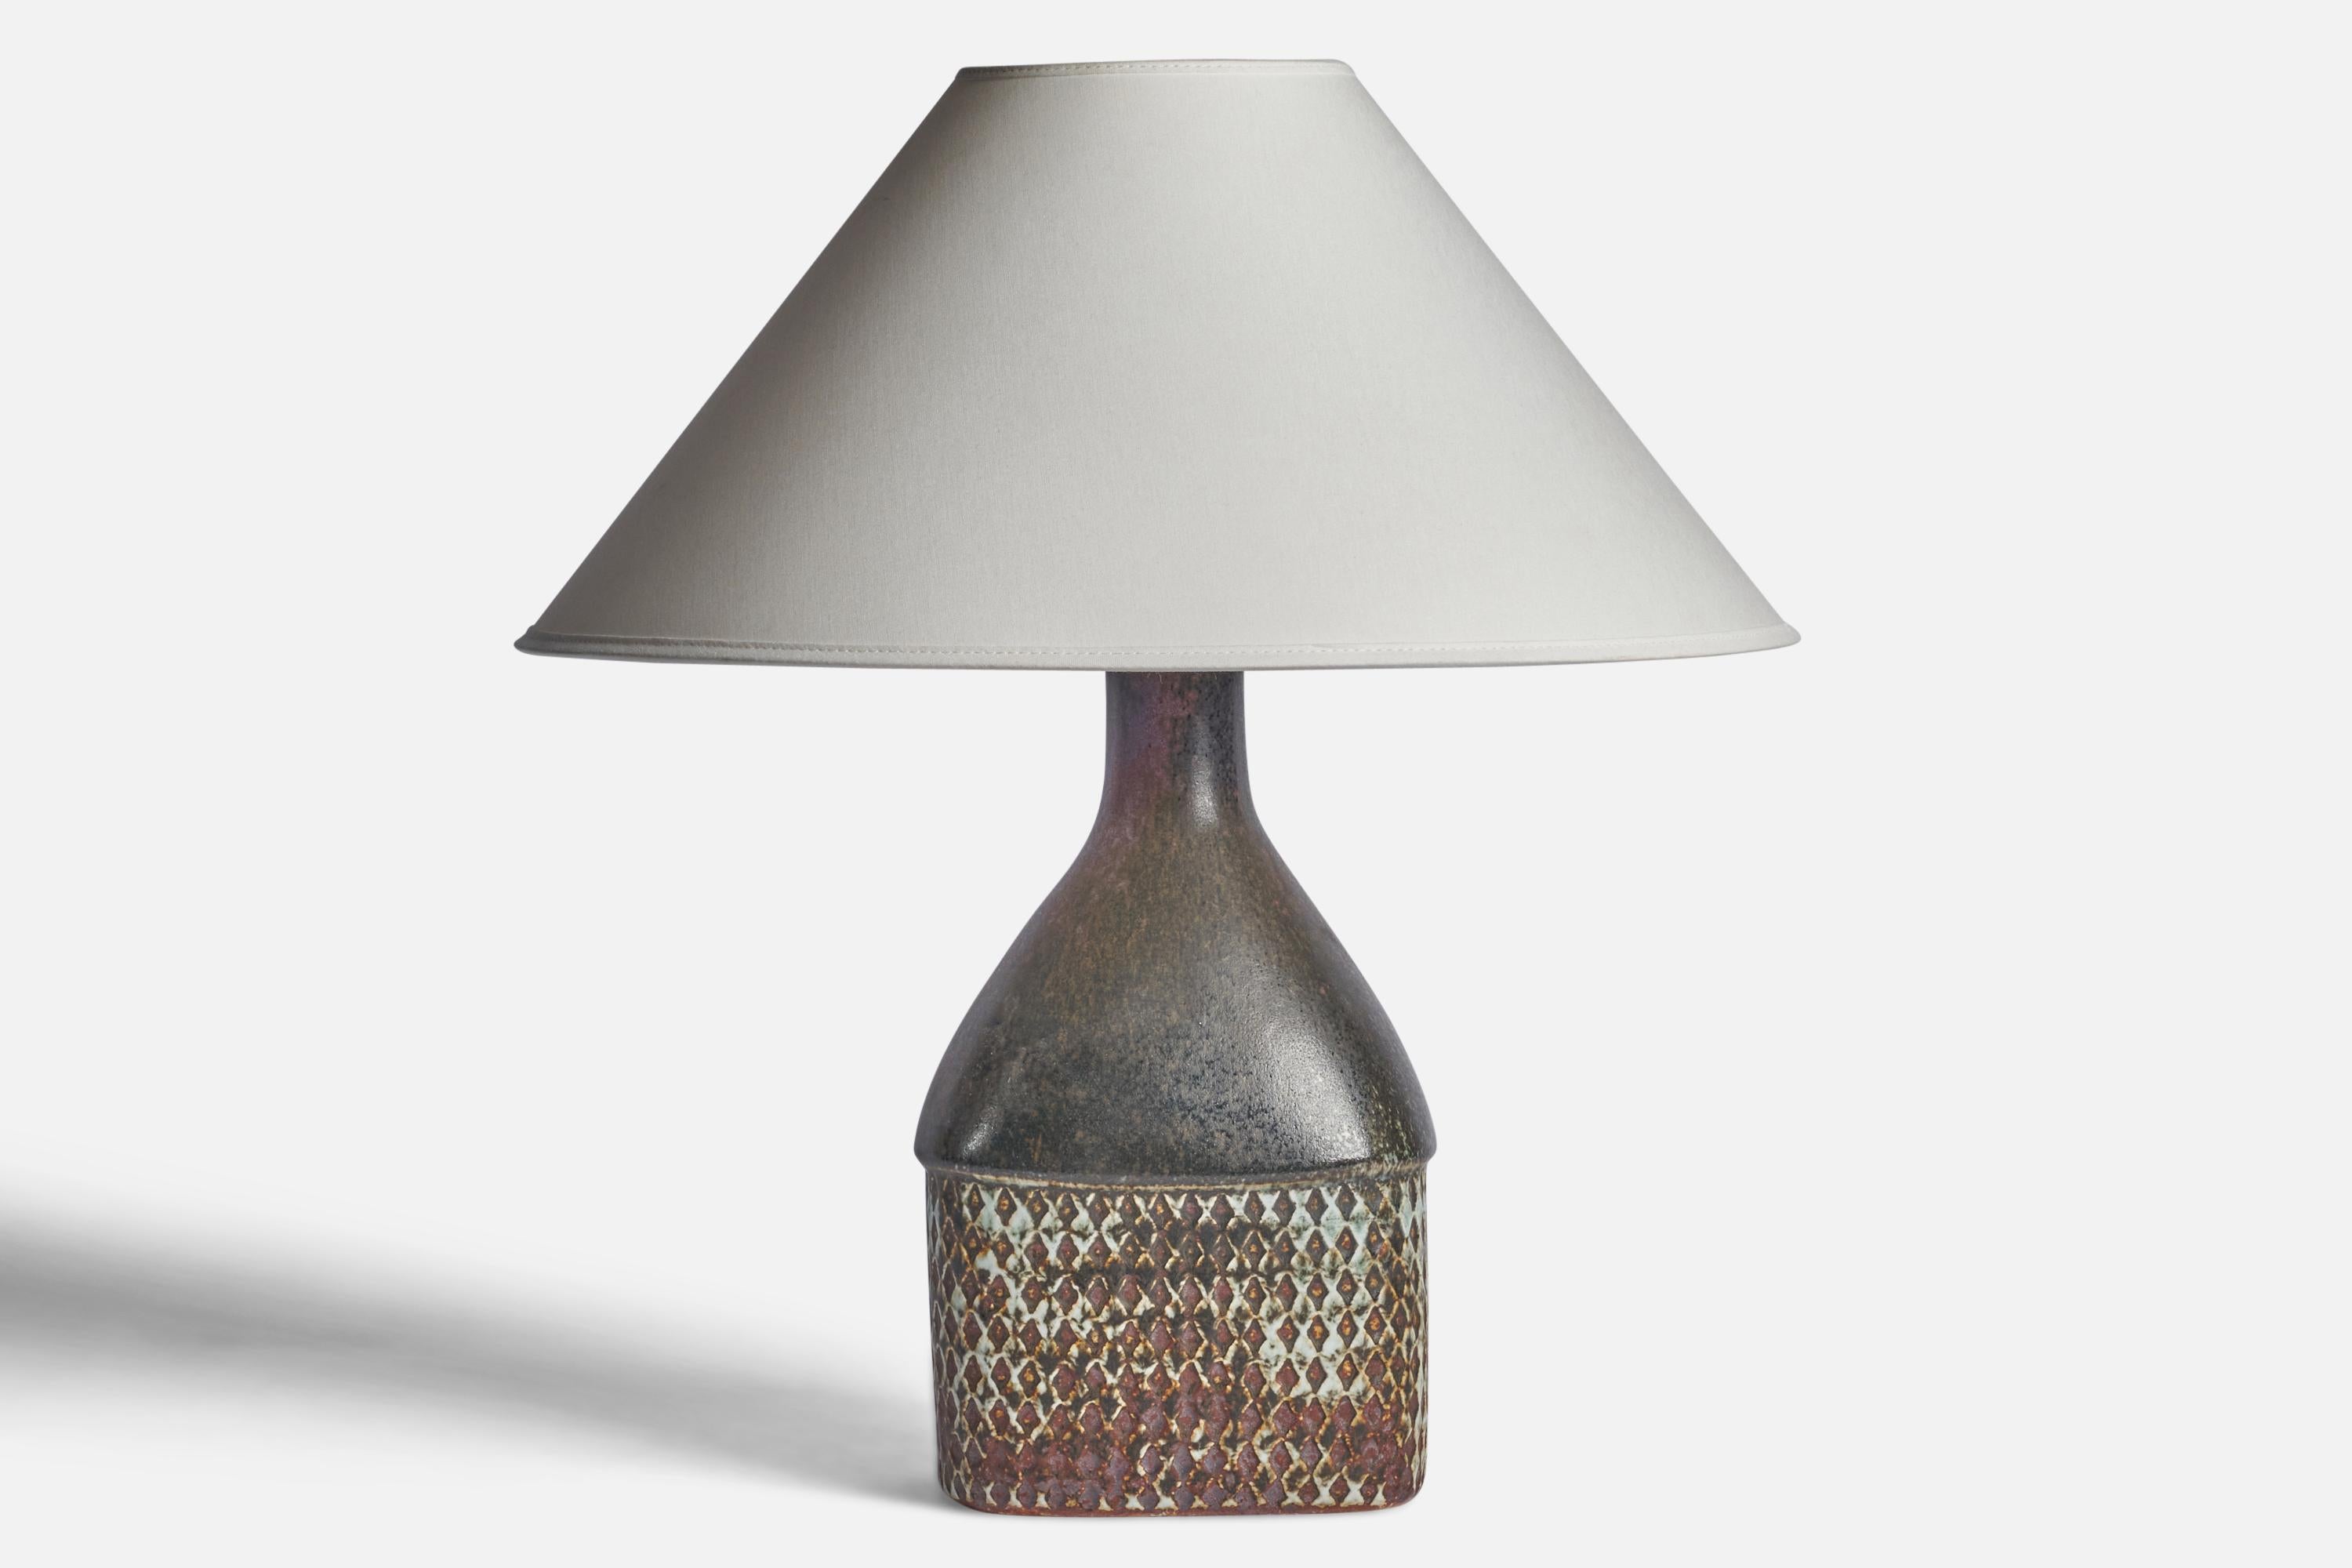 Lampe de table en grès émaillé conçue par Stig Lindberg et produite par Gustavsberg, Suède, années 1950.

Dimensions de la lampe (pouces) : 13.25 H x 6.25